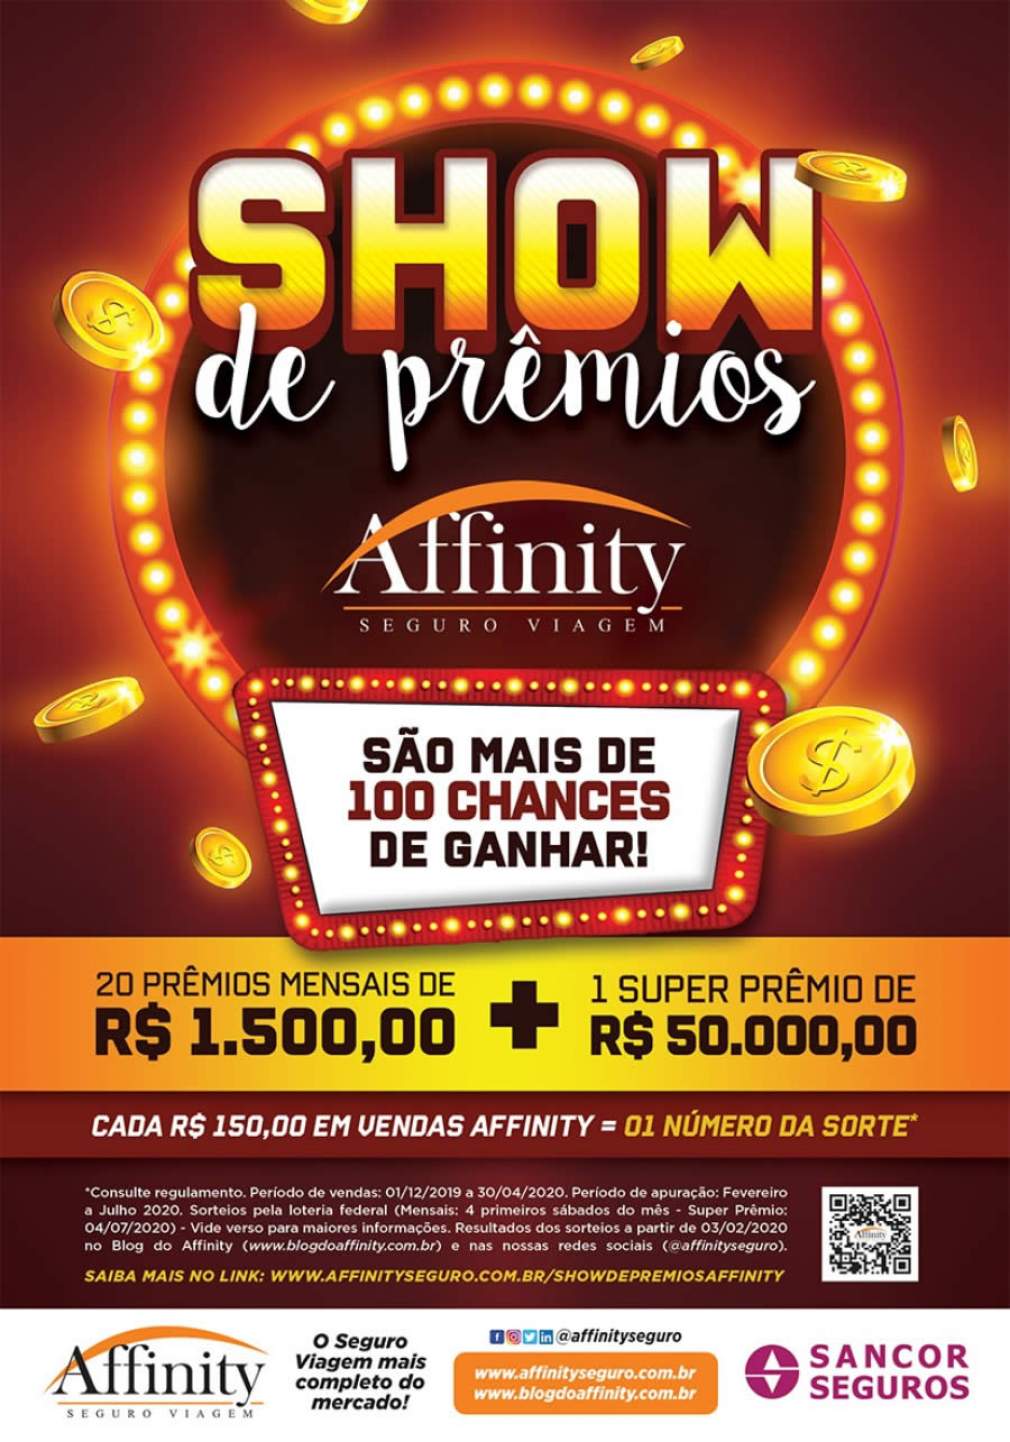 Show de Prêmios: Affinity vai sortear R$ 200 mil para agentes e corretores